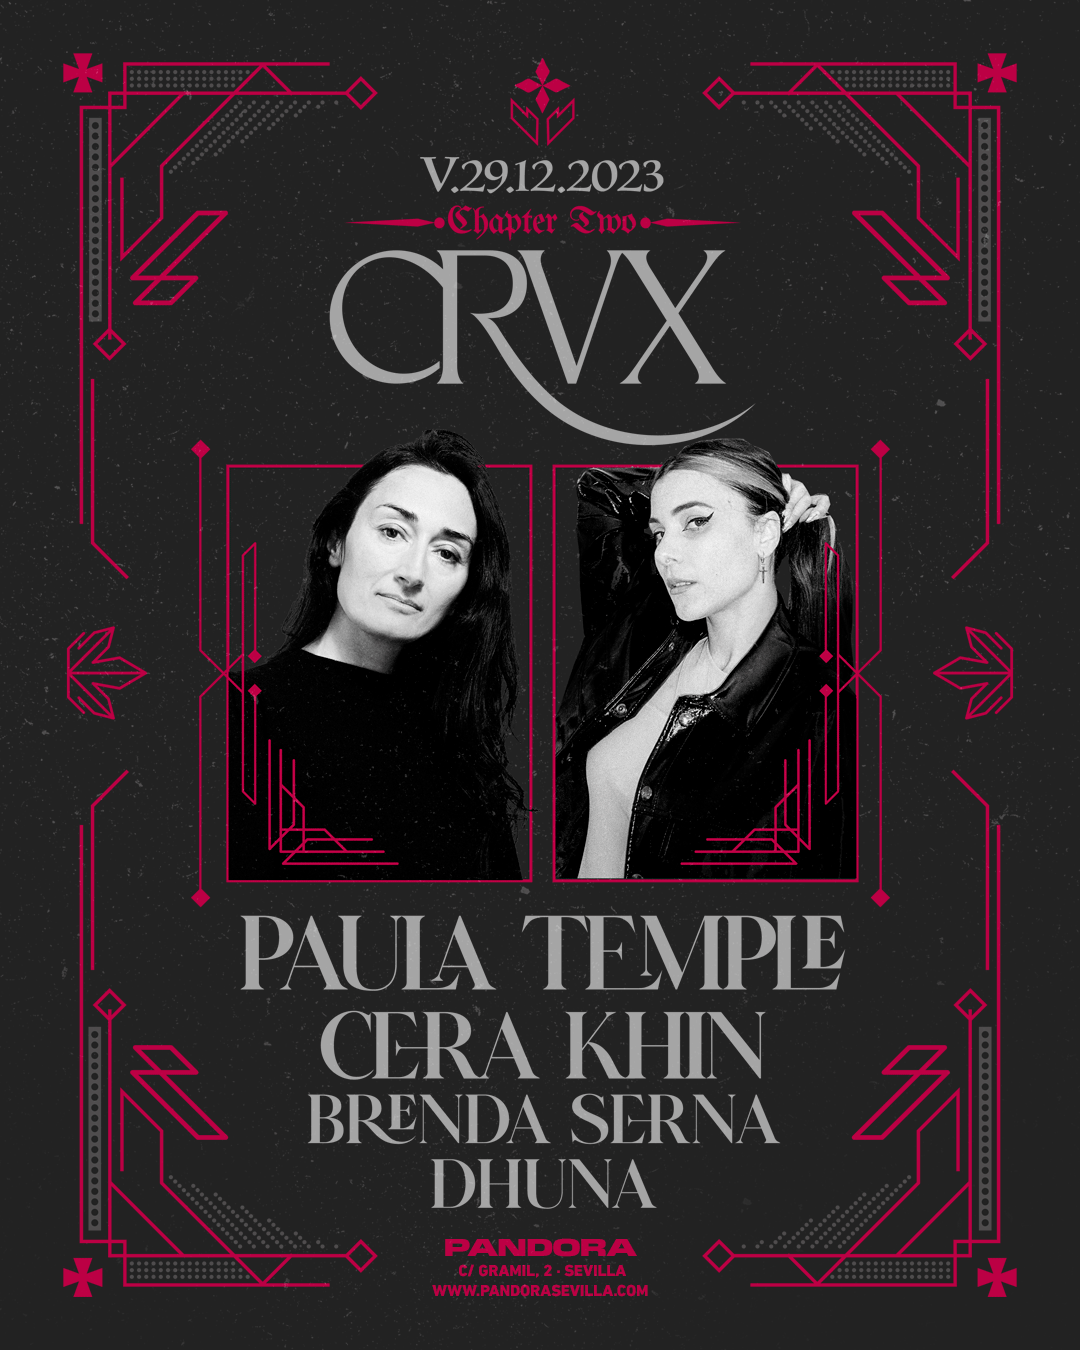 CRVX: Next Chapter with Paula Temple + Cera Khin + Brenda Serna + Dhuna - Página frontal